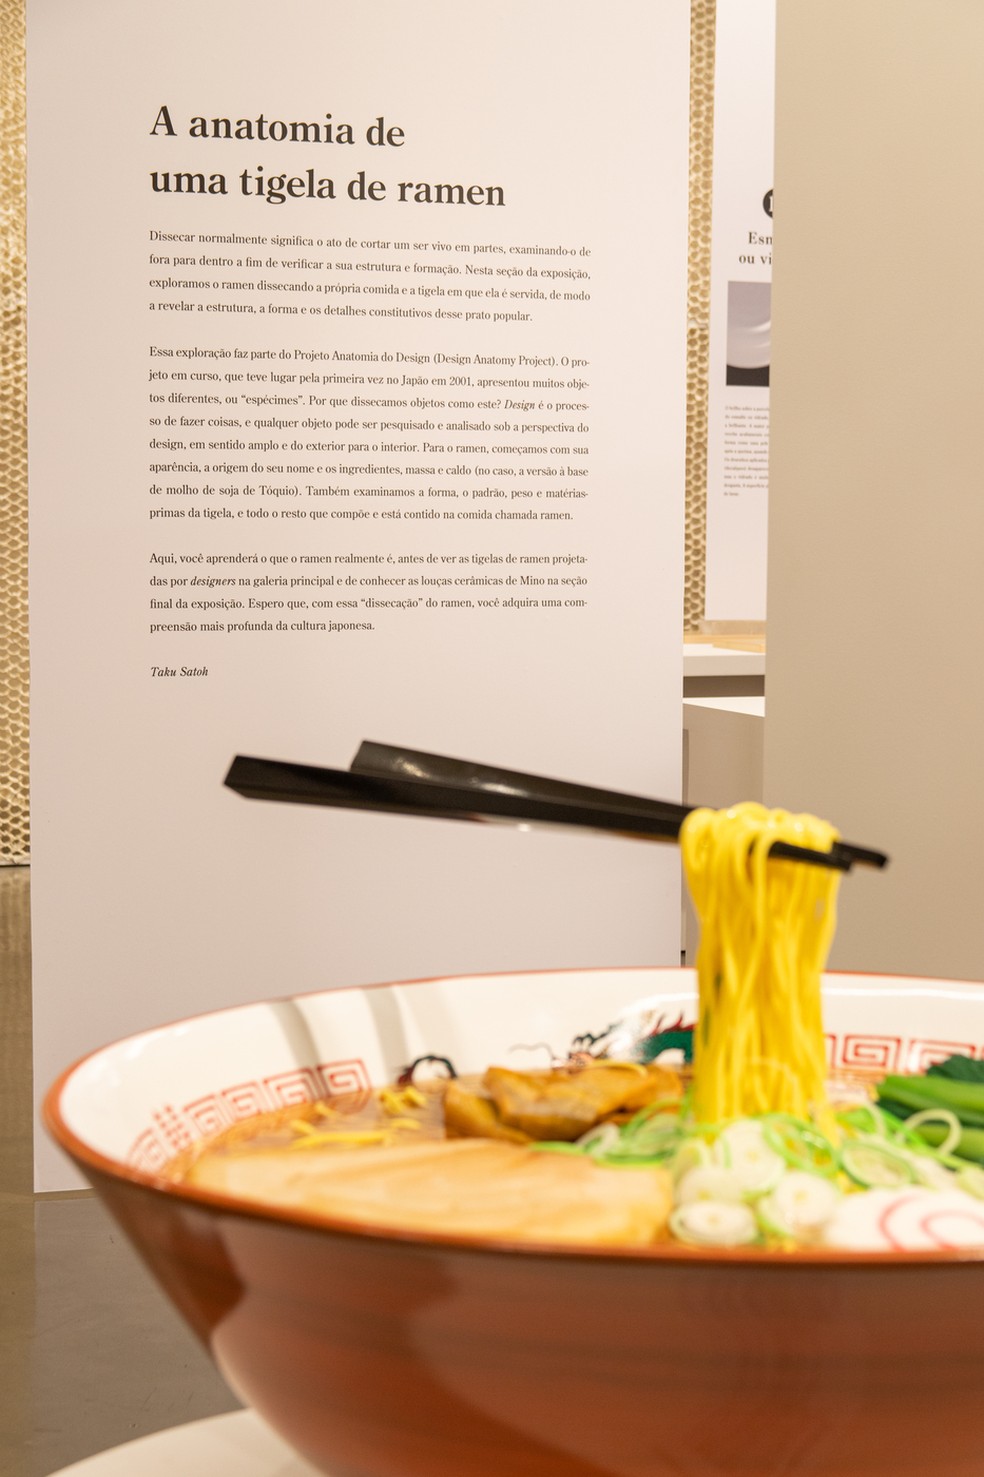 Os ingredientes do prato também são destacados na mostra  — Foto: Divulgação / Wagner Romano 